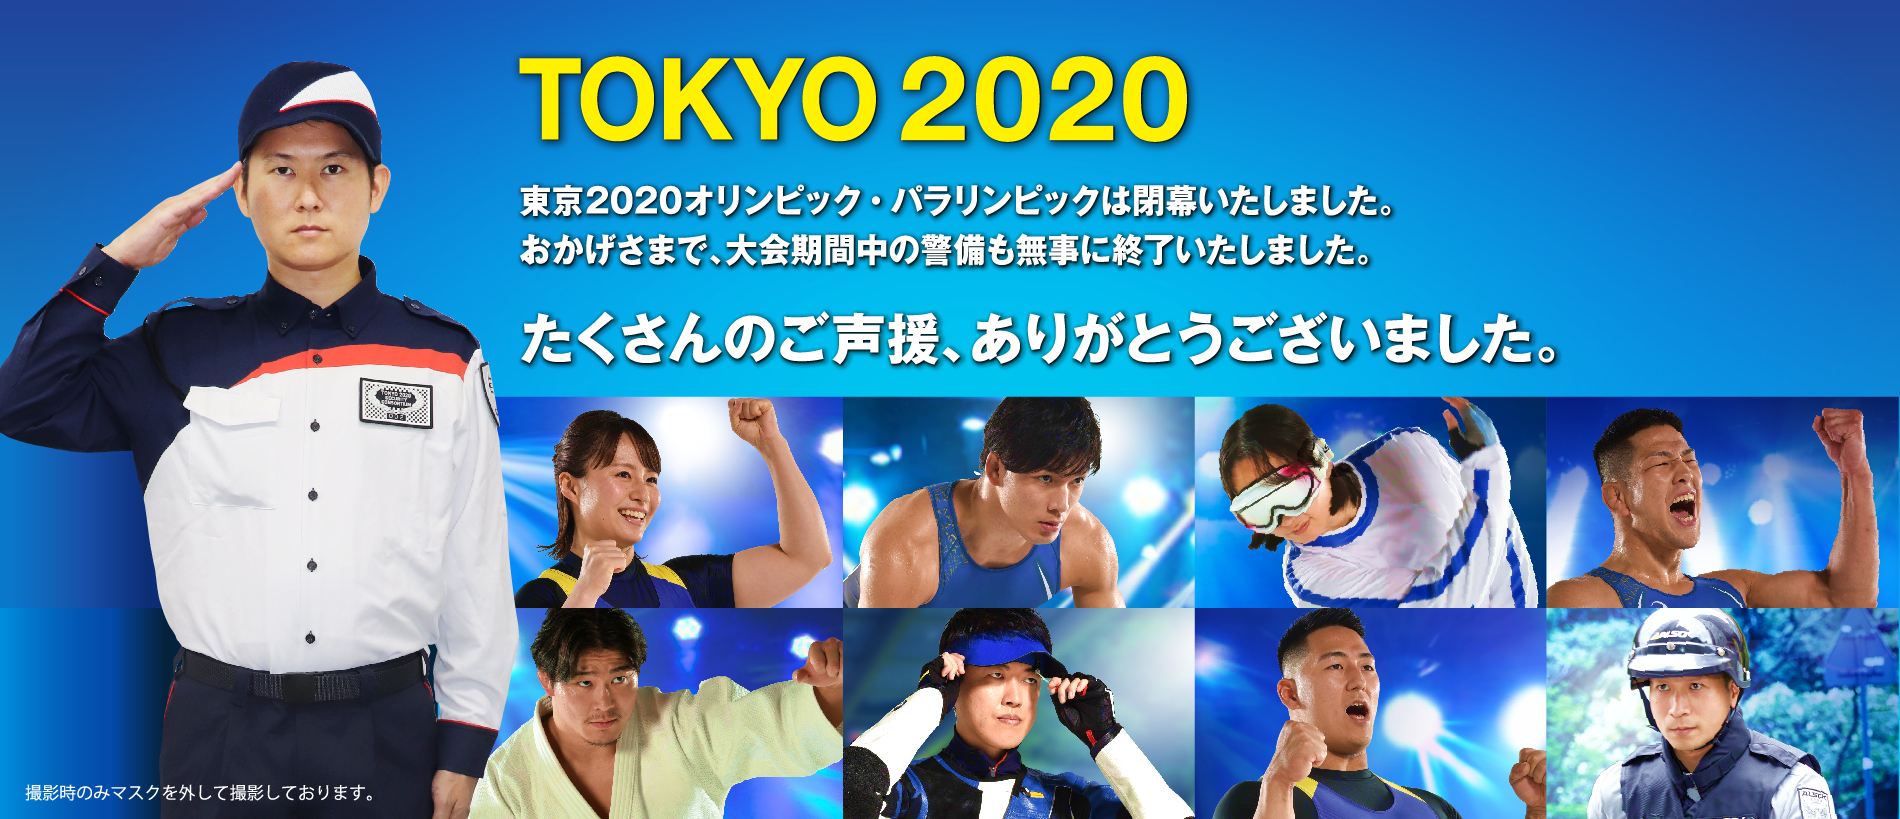 東京2020オリンピック・パラリンピック たくさんのご声援、ありがとうございました。